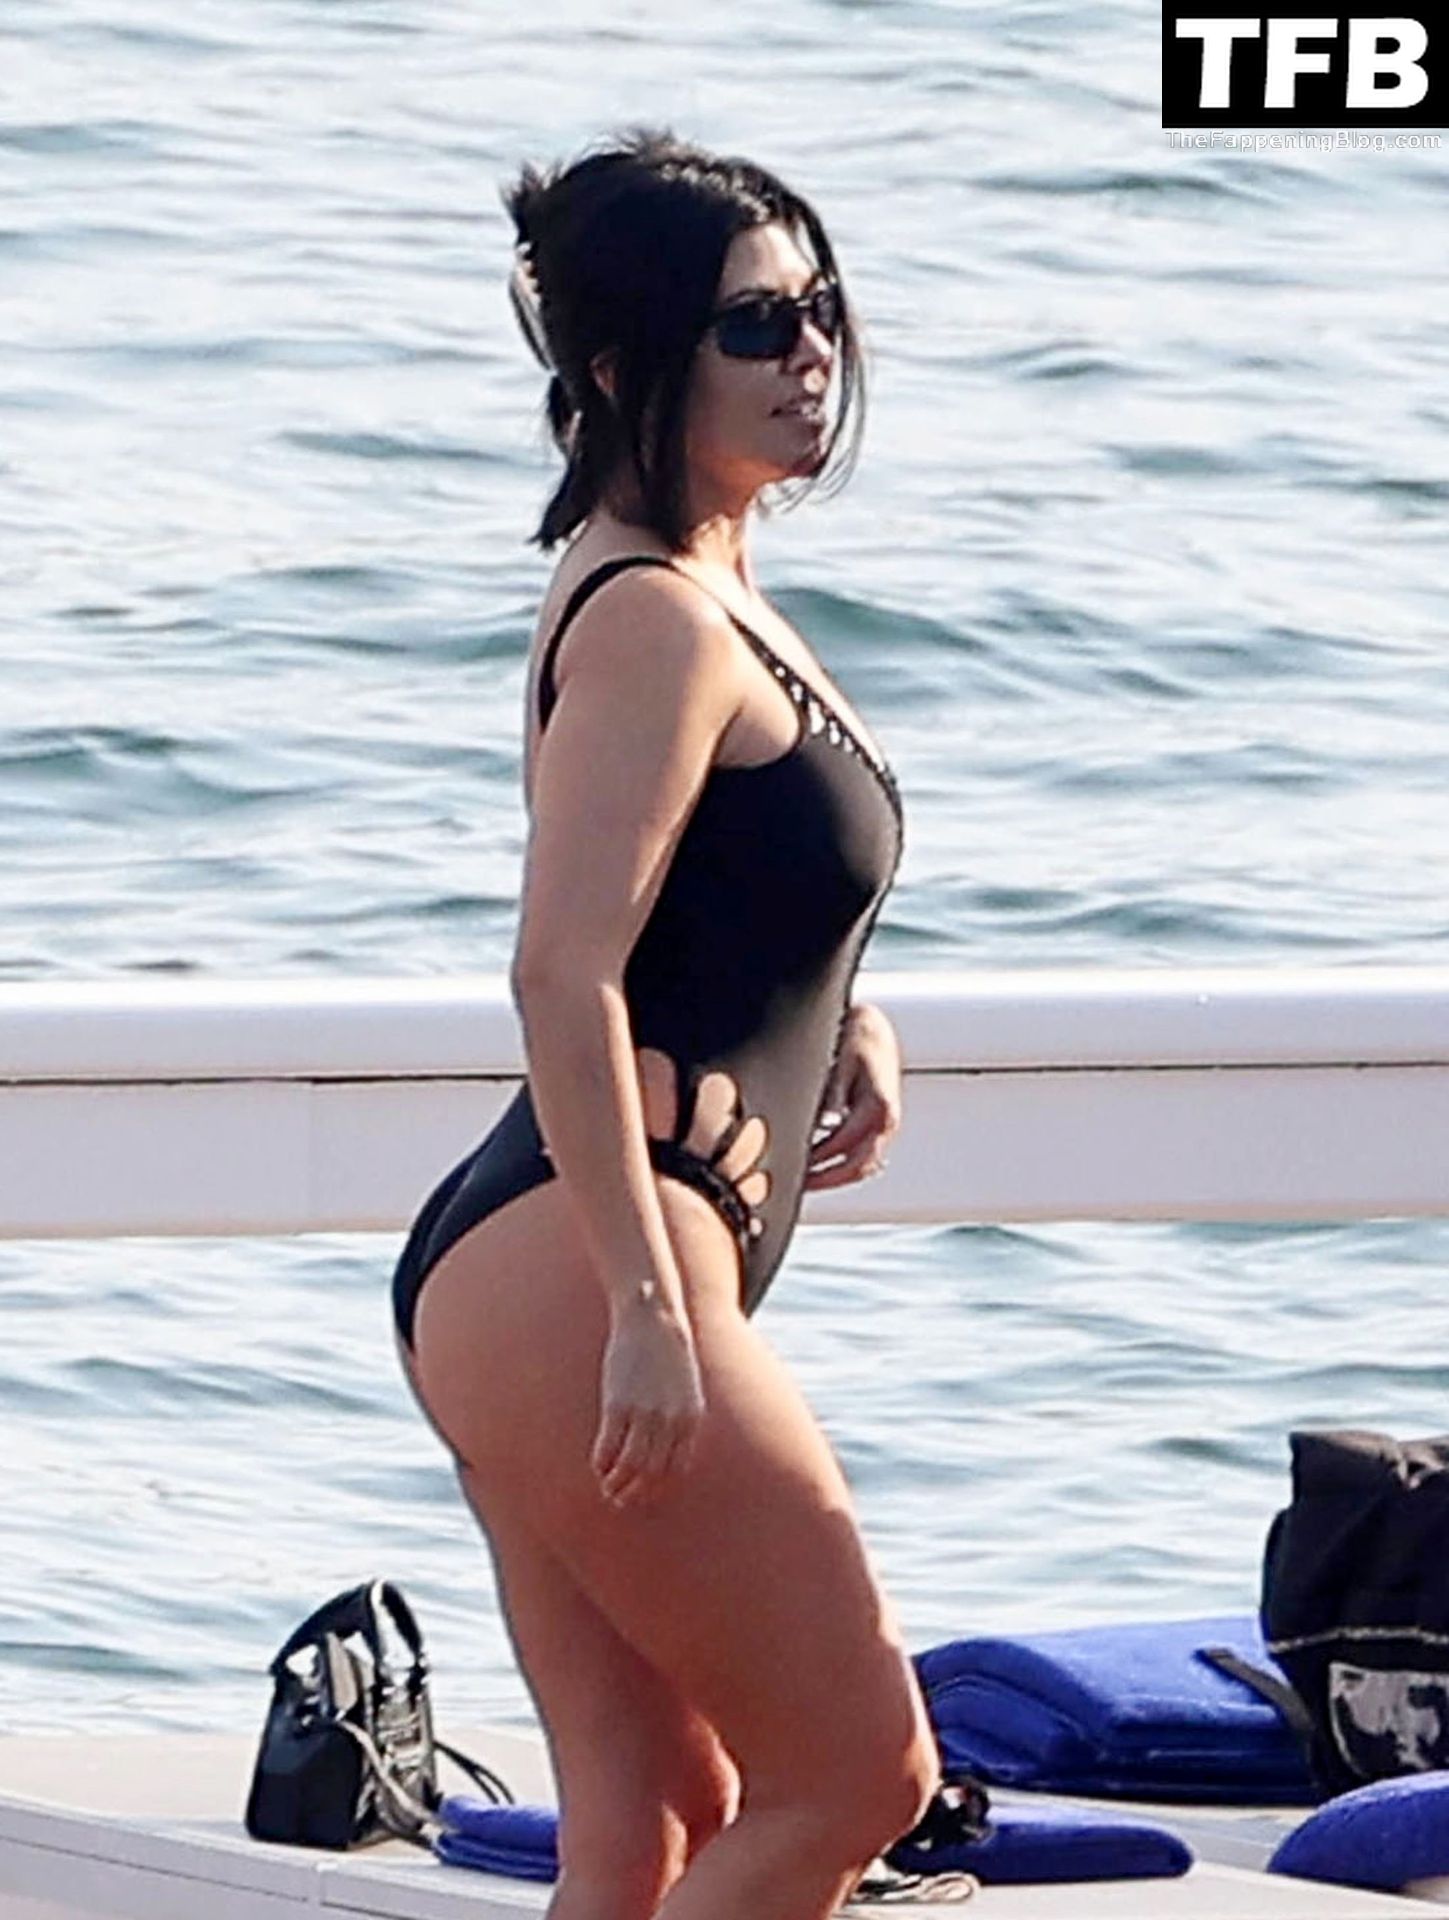 Kourtney-Kardashian-Sexy-The-Fappening-Blog-47.jpg